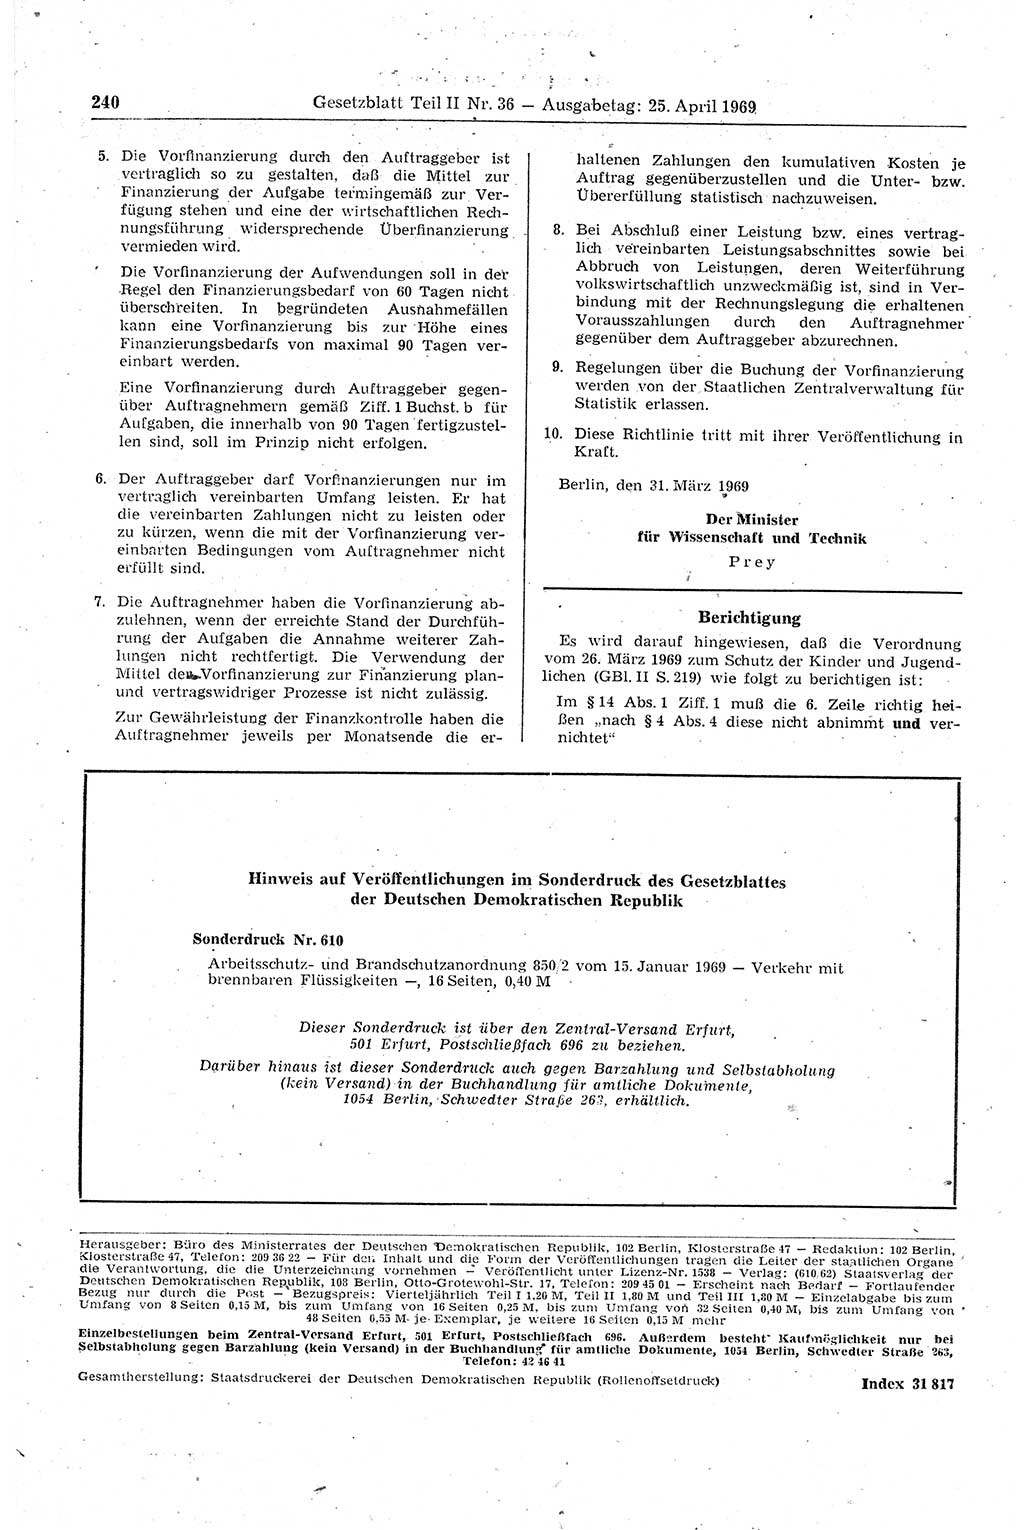 Gesetzblatt (GBl.) der Deutschen Demokratischen Republik (DDR) Teil ⅠⅠ 1969, Seite 240 (GBl. DDR ⅠⅠ 1969, S. 240)